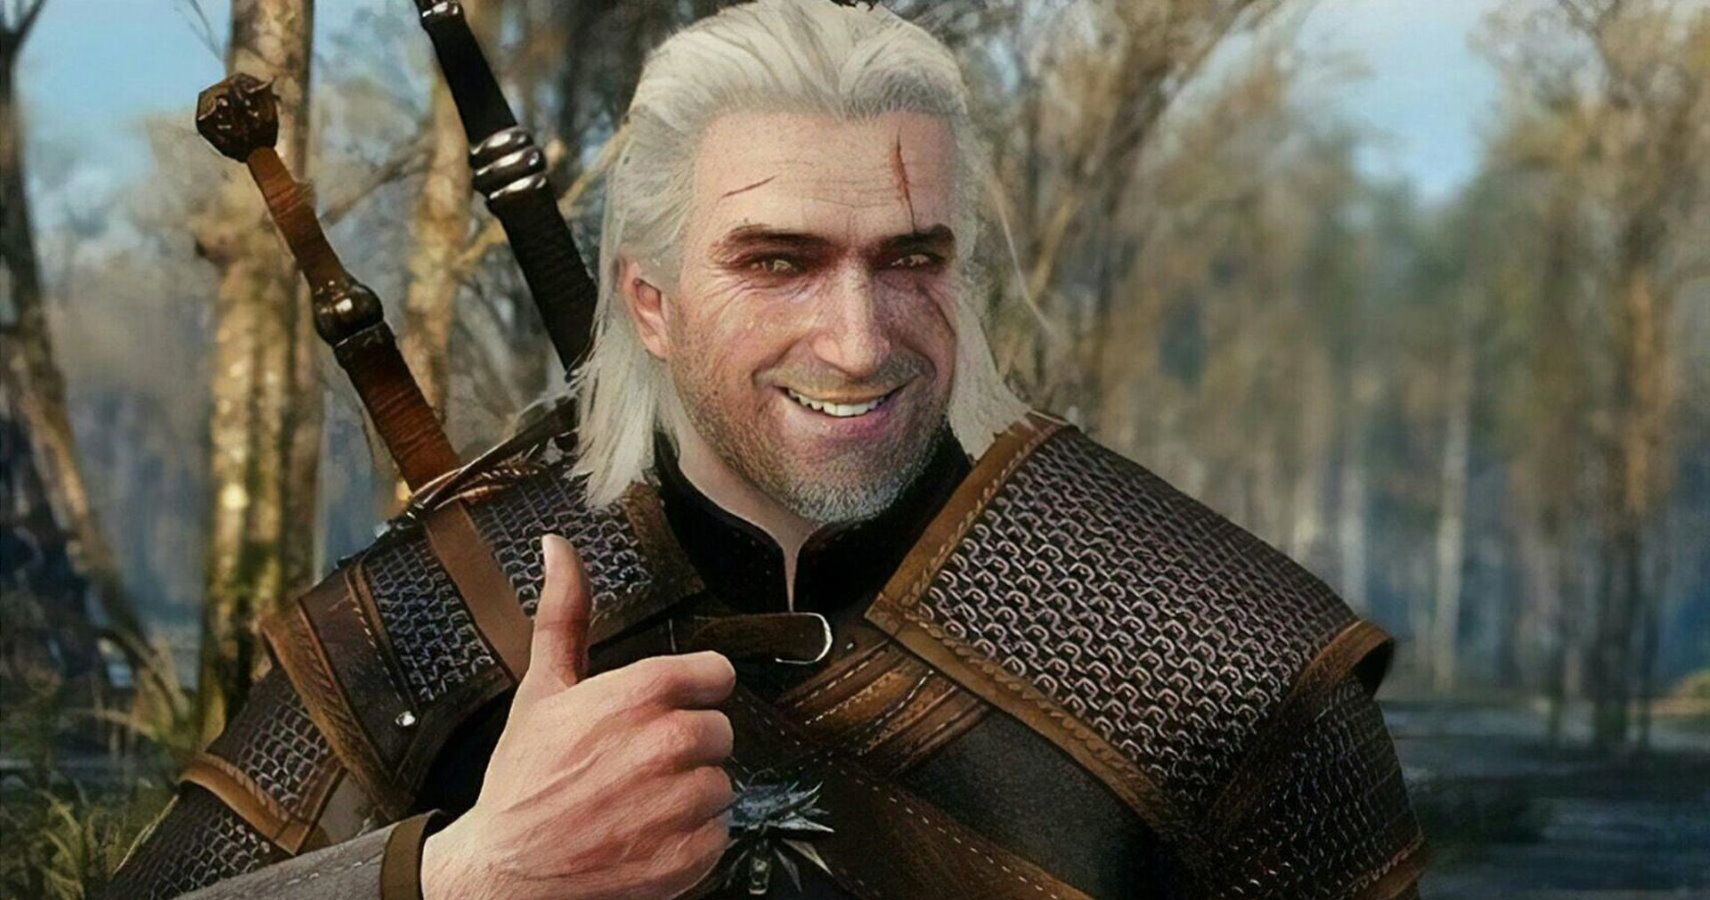 Smiling Geralt